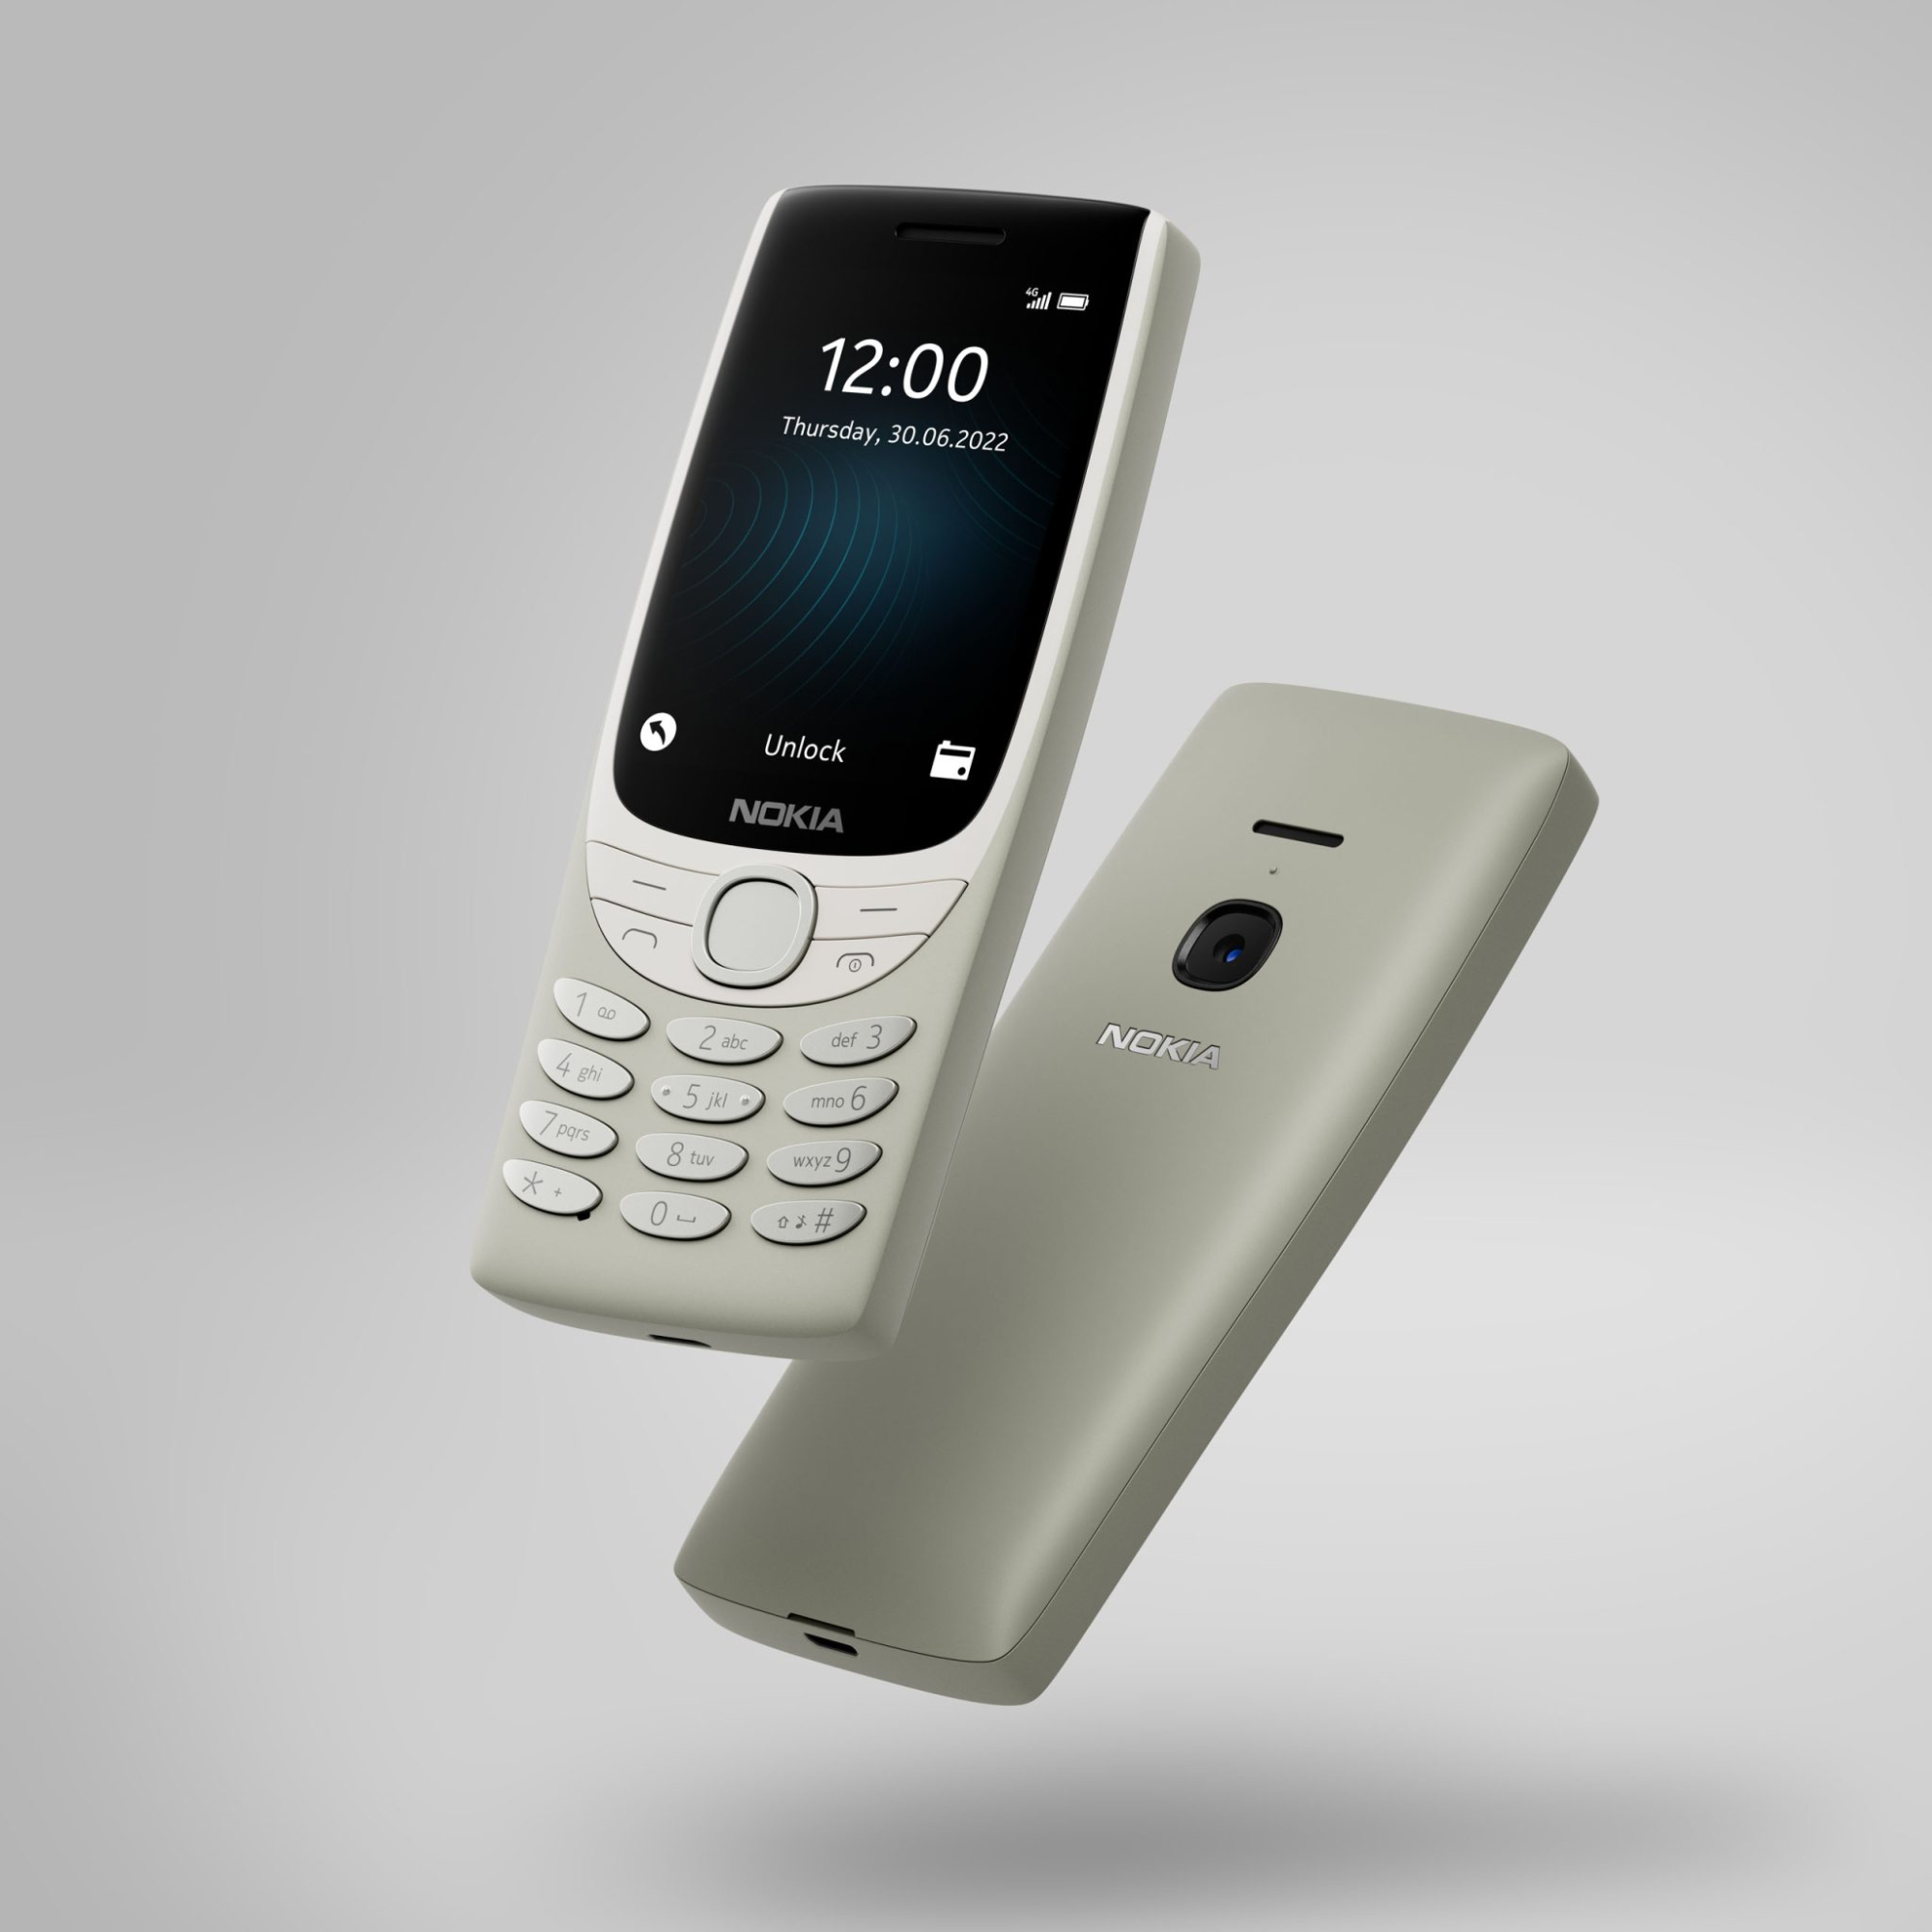 Điểm mặt các dòng điện thoại Nokia bàn phím đáng sưu tầm